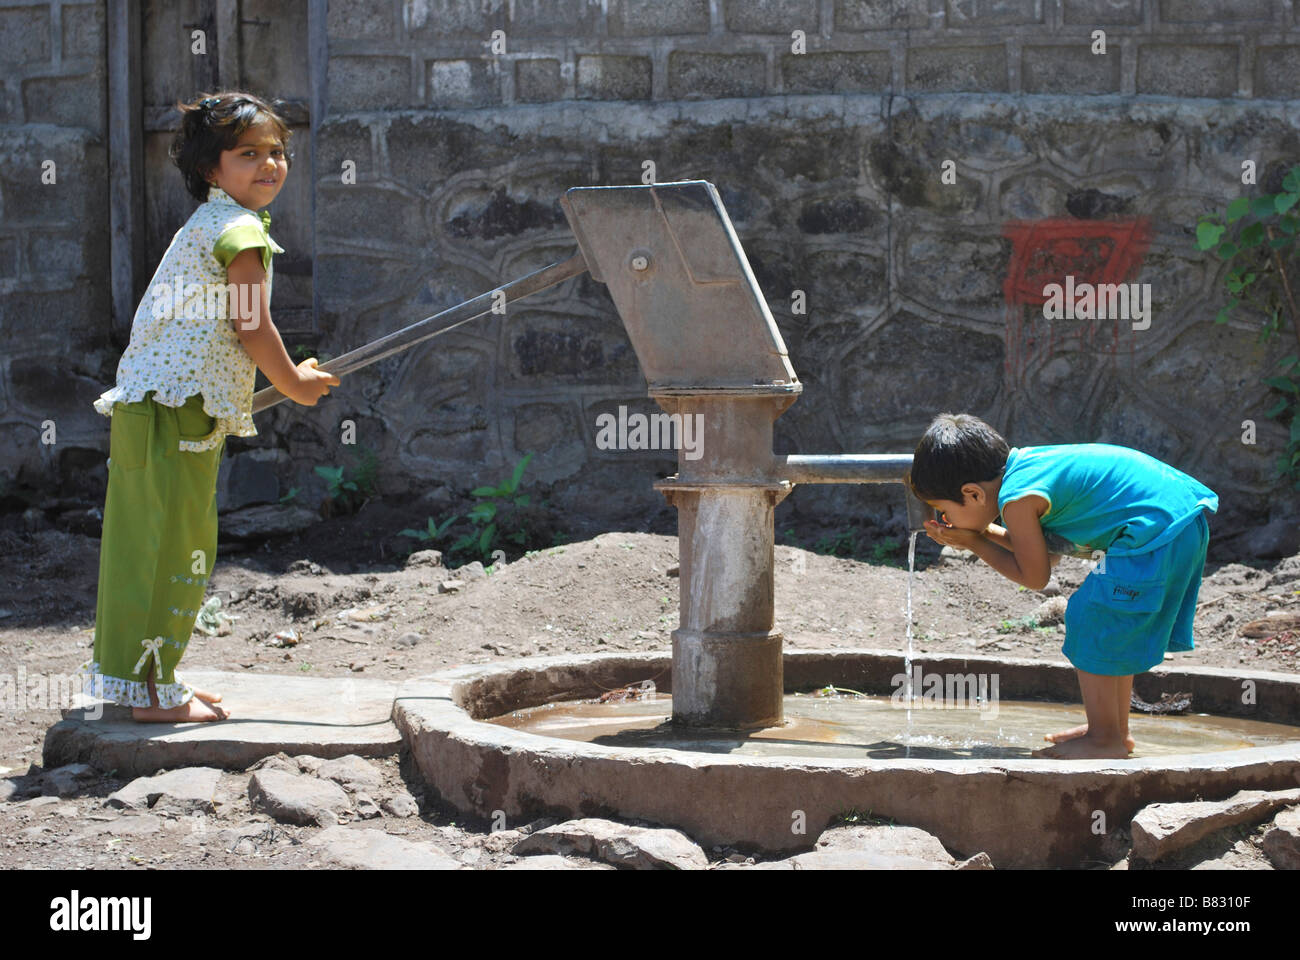 Les enfants à l'aide d'un pompe à eau pour l'eau potable. Satara, Maharashtra, Inde. Banque D'Images